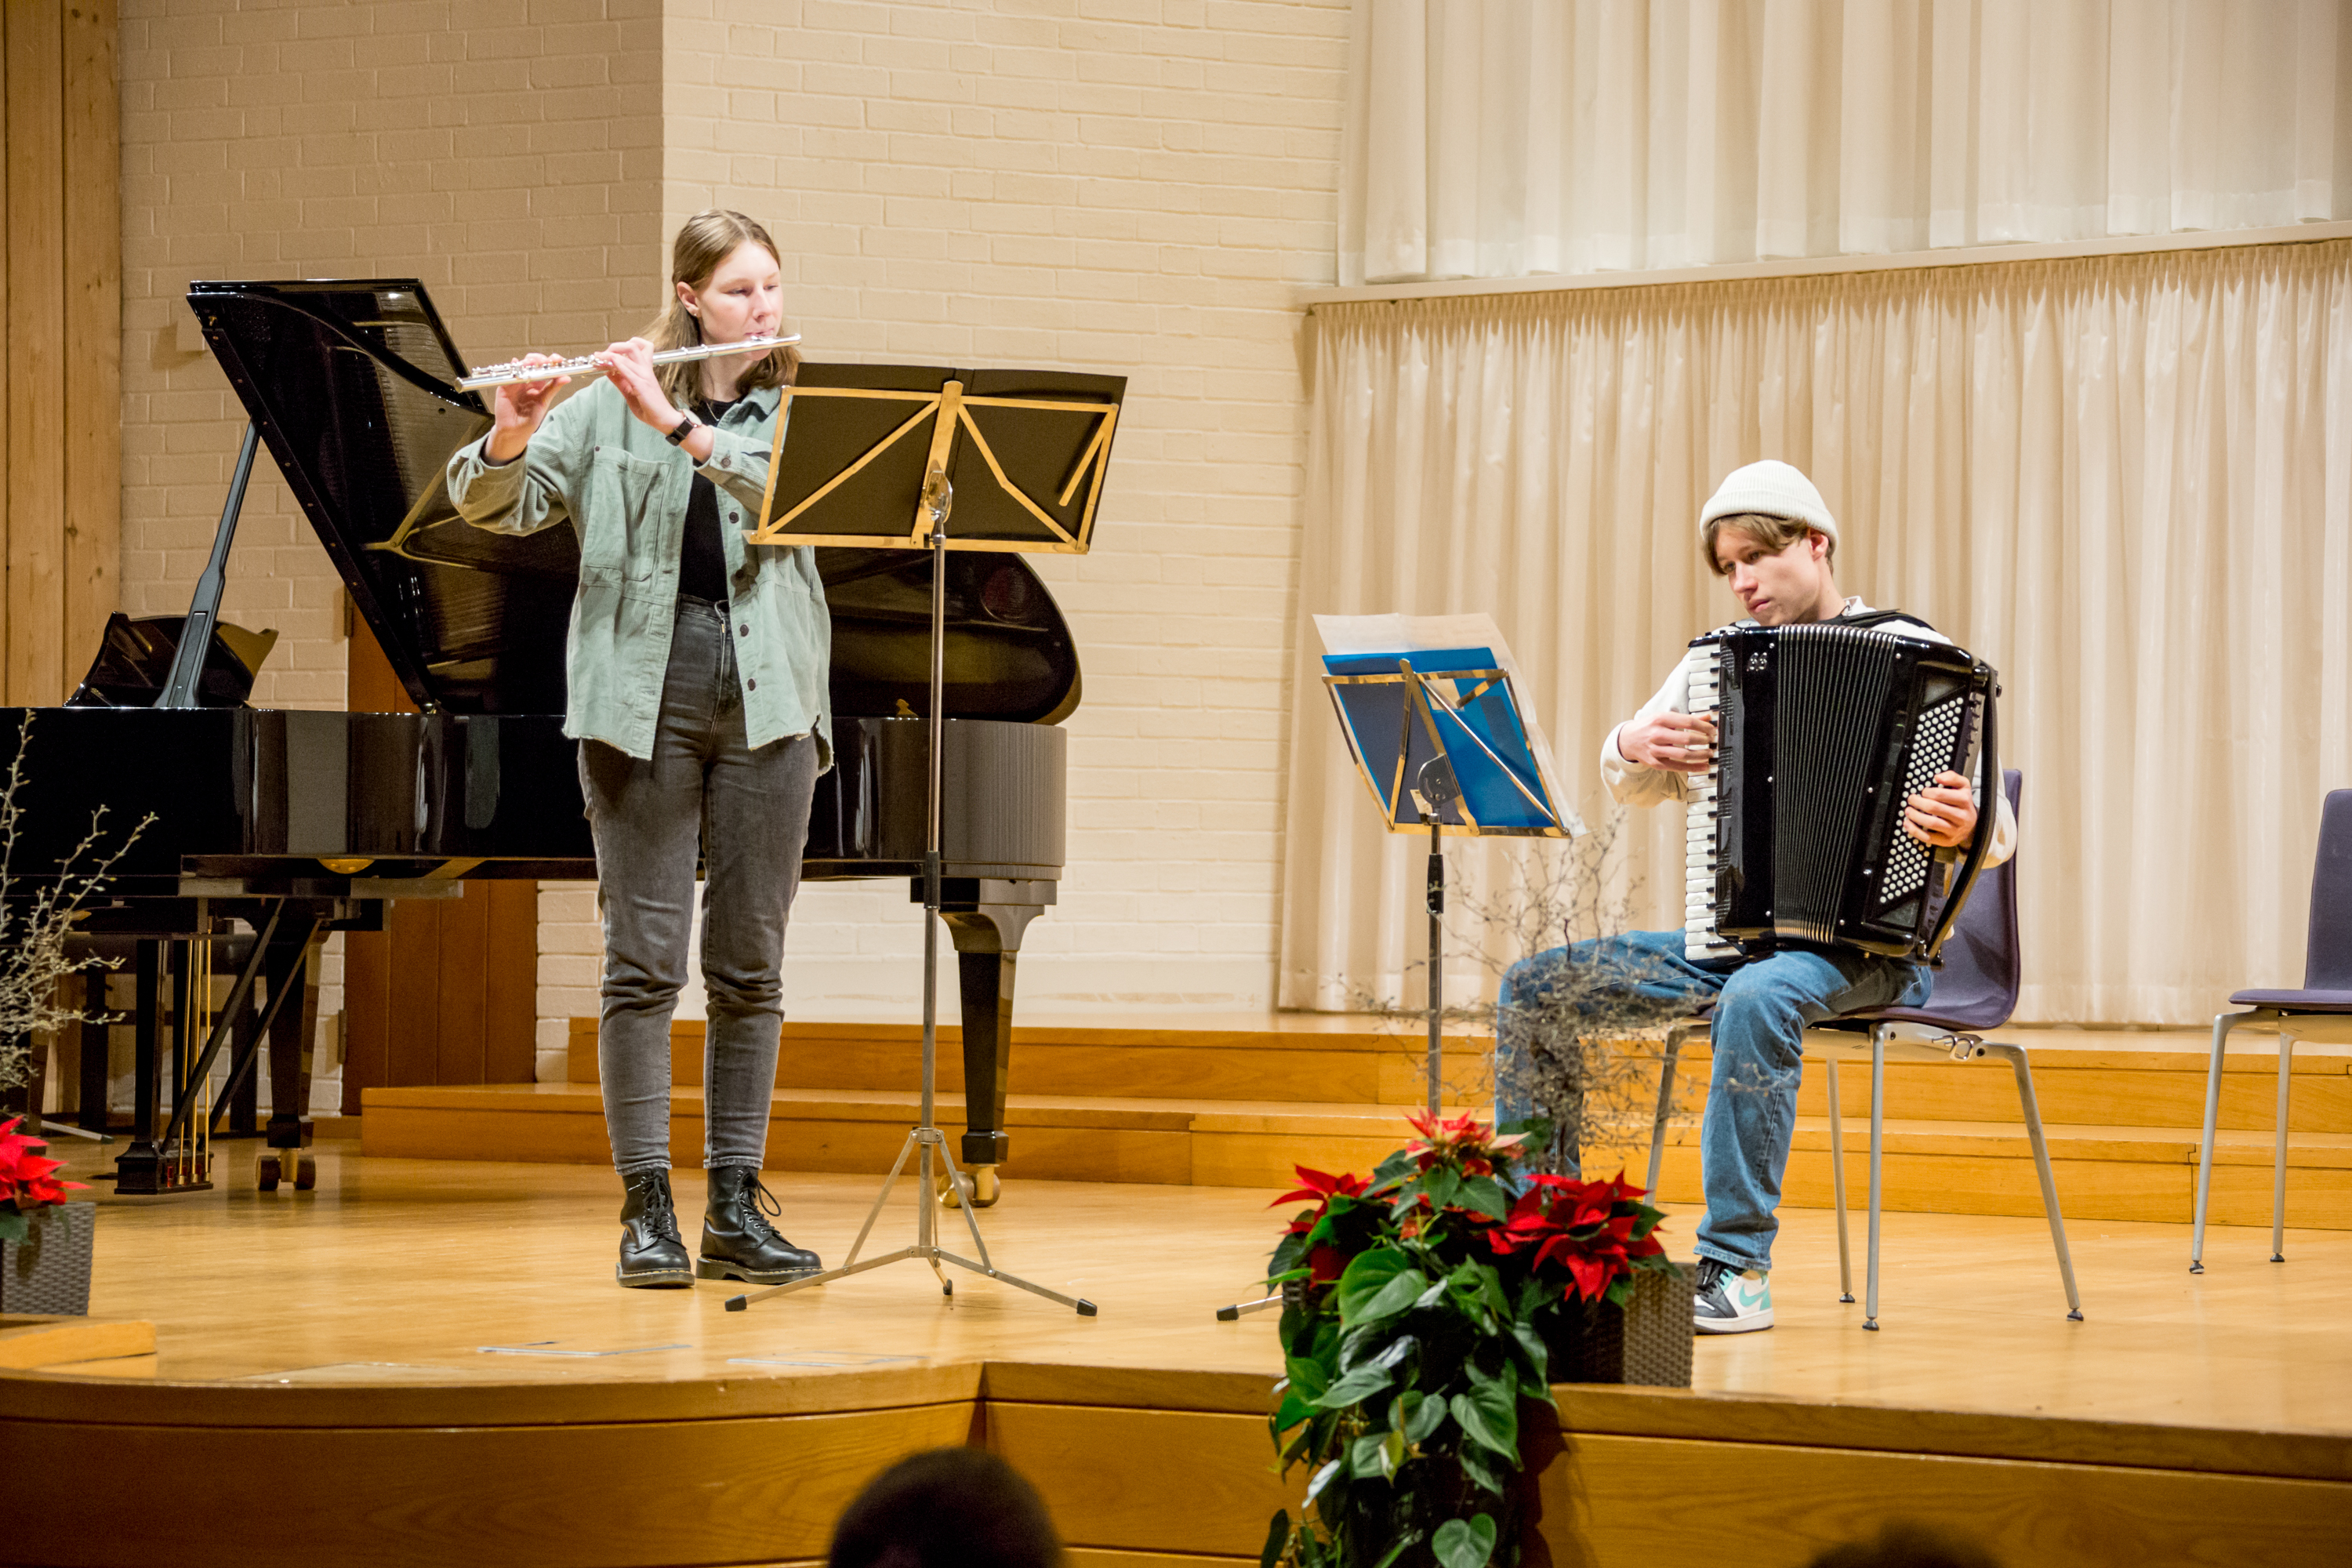 Festliches Weihnachtskonzert der Sing- und Musikschule im historischen Reitstadel